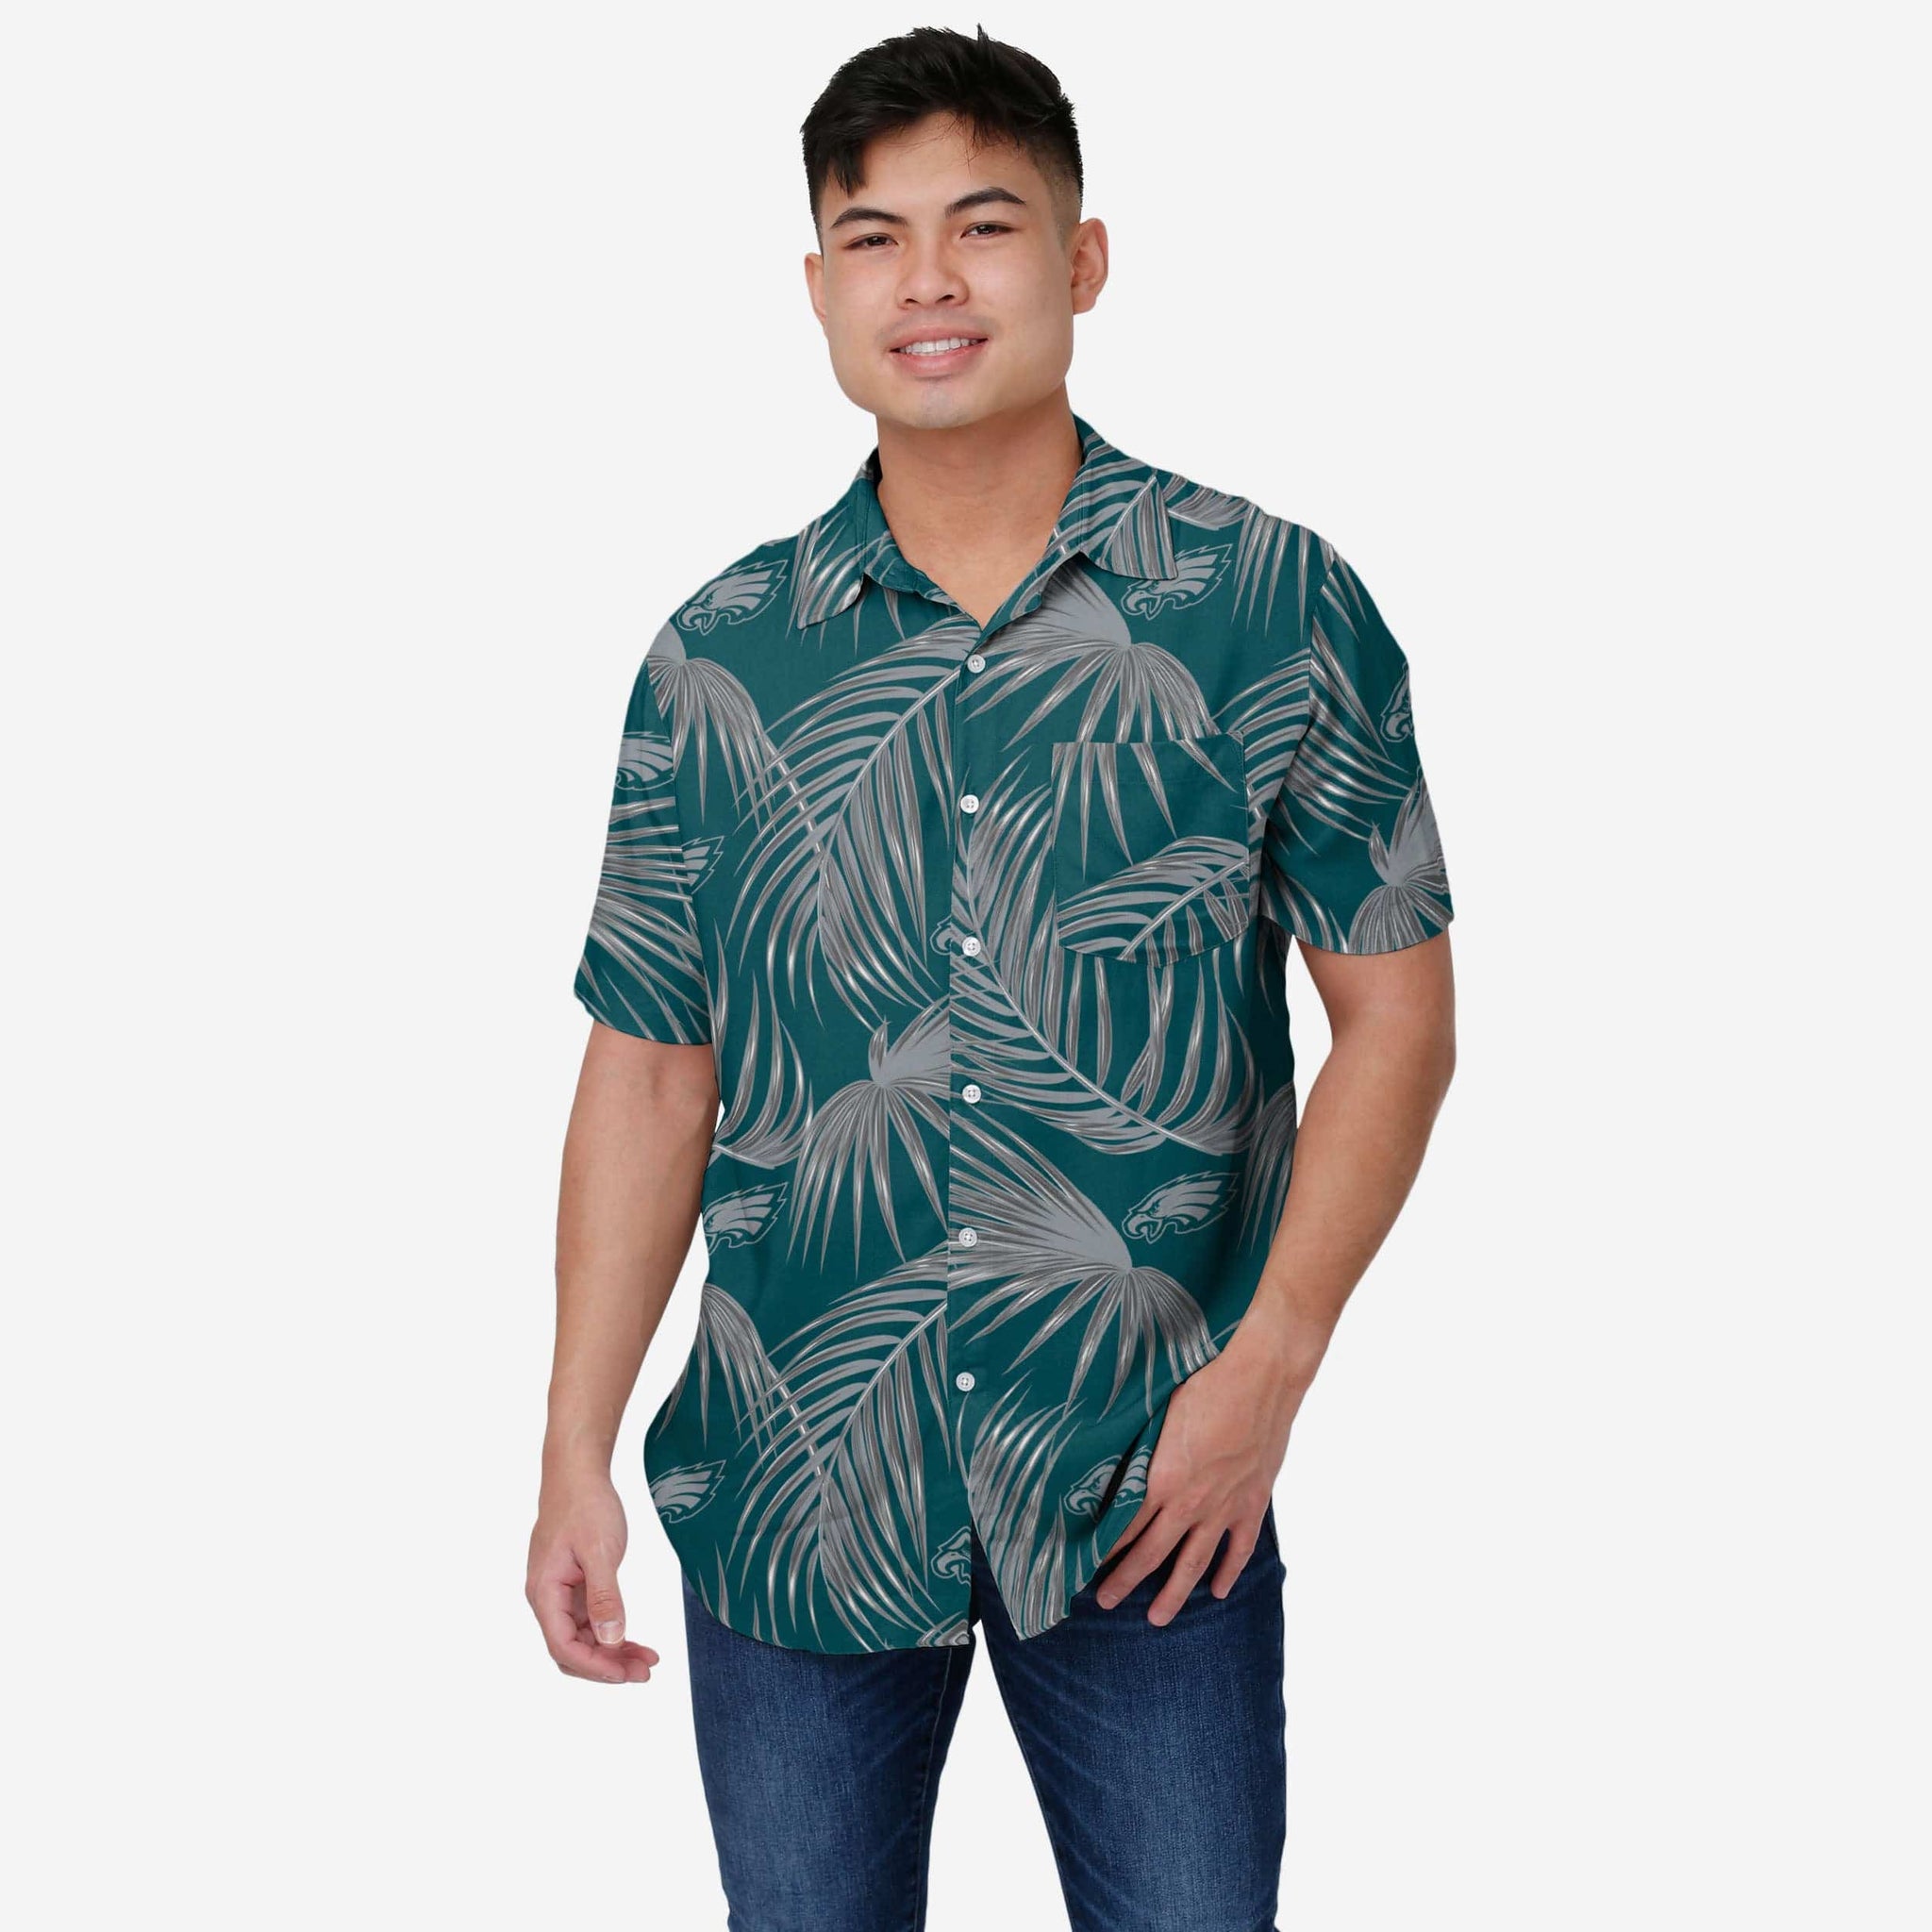 Philadelphia Eagles NFL Hawaiian Shirt Trending Gift For Football Fans